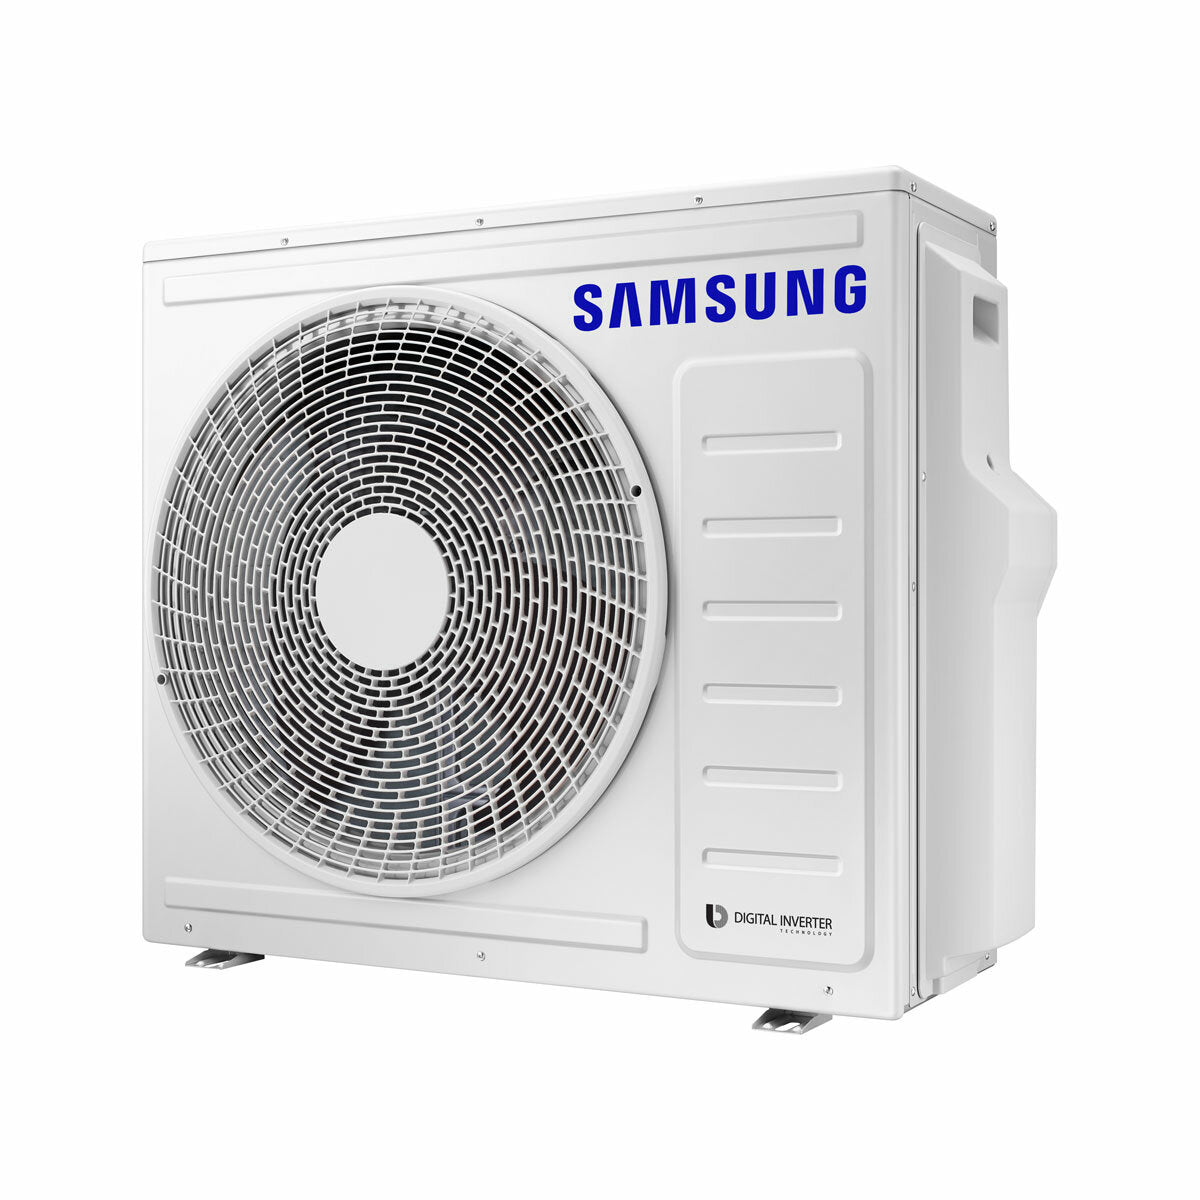 Samsung Climatiseur Windfree 4 voies split carré 9000 + 9000 + 12000 + 12000 BTU inverter A++ unité extérieure 8,0 kW